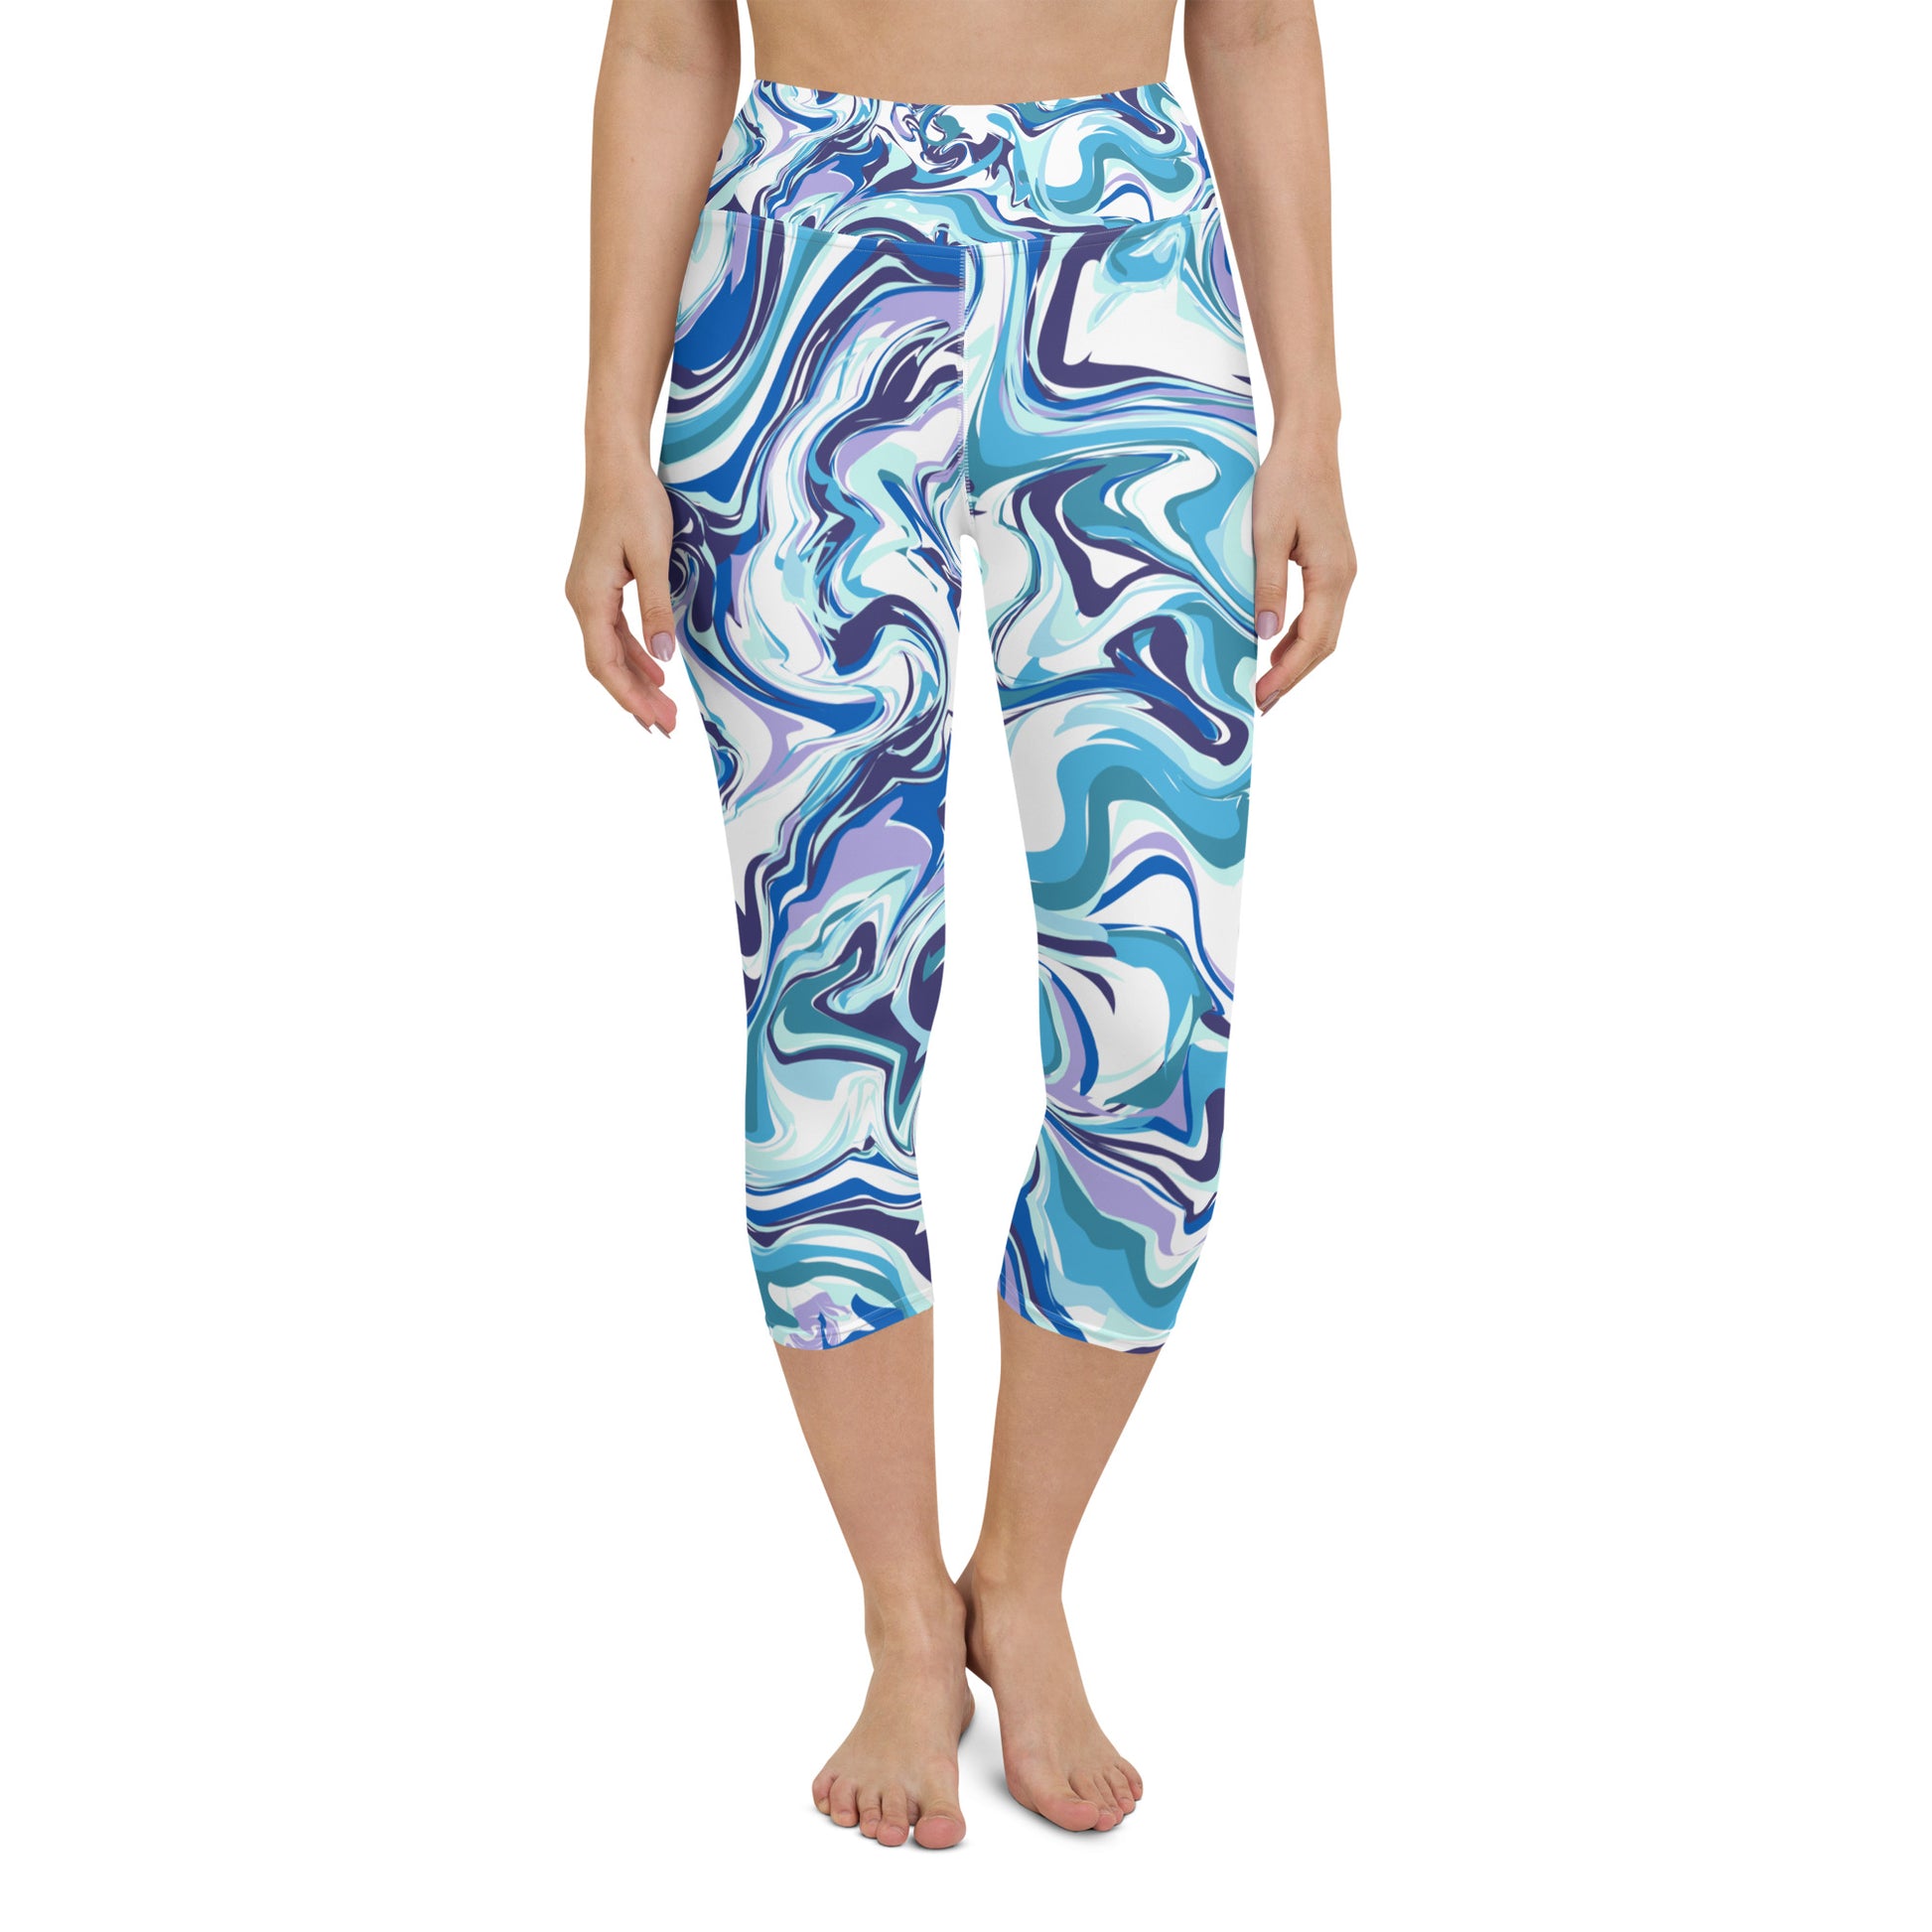 Blue swirl yoga leggings, workout leggings, stretchy leggings, moisture-wicking leggings, high-waisted leggings, compression leggings, breathable leggings, non-see-through leggings, seamless leggings, eco-friendly leggings 